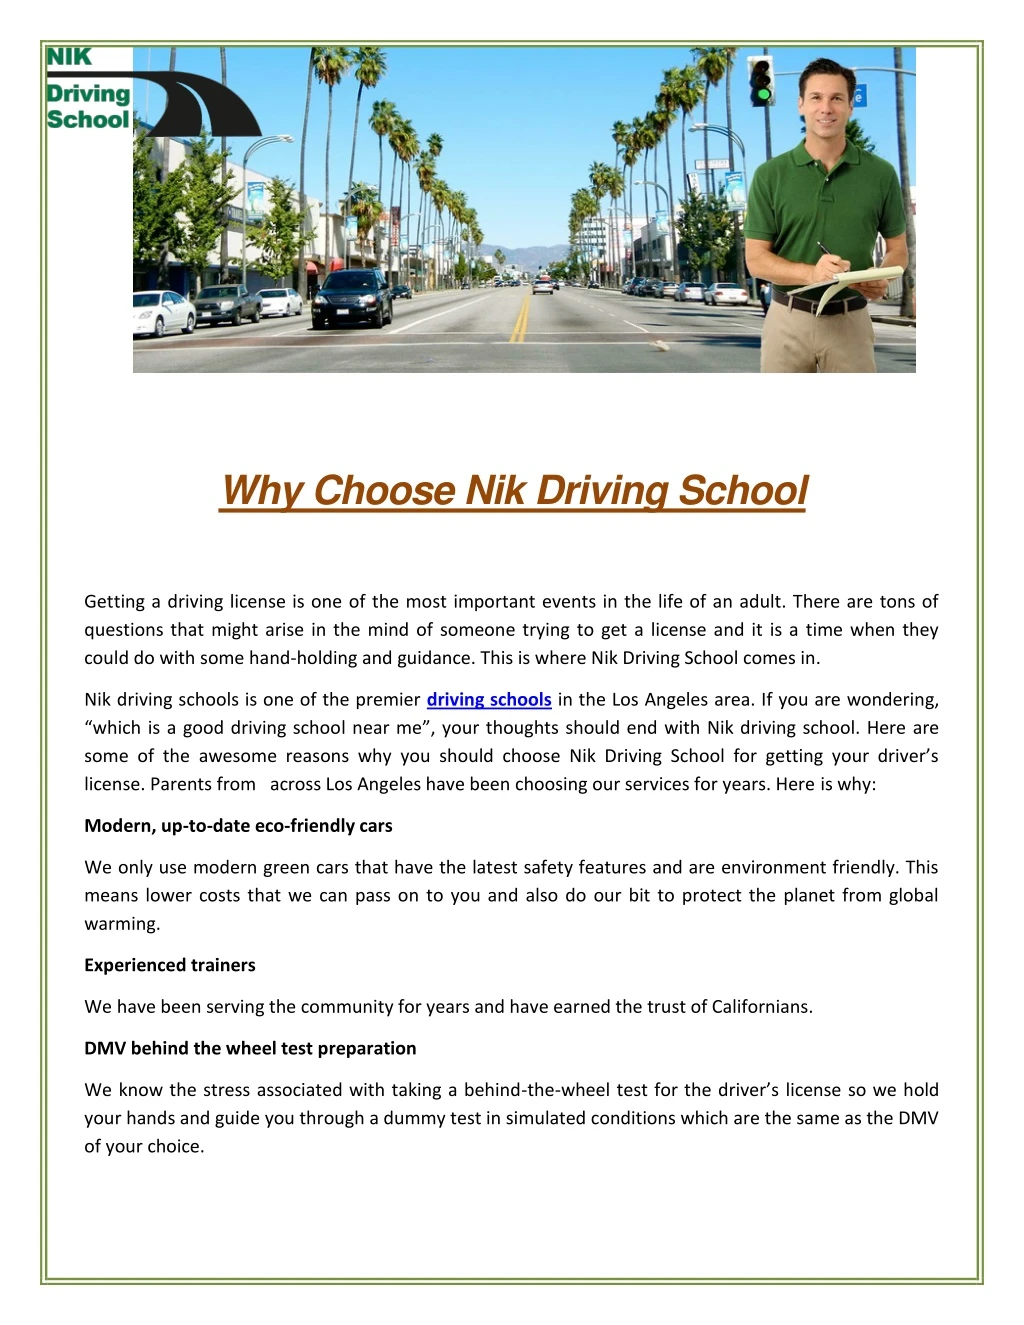 why choose nik driving school